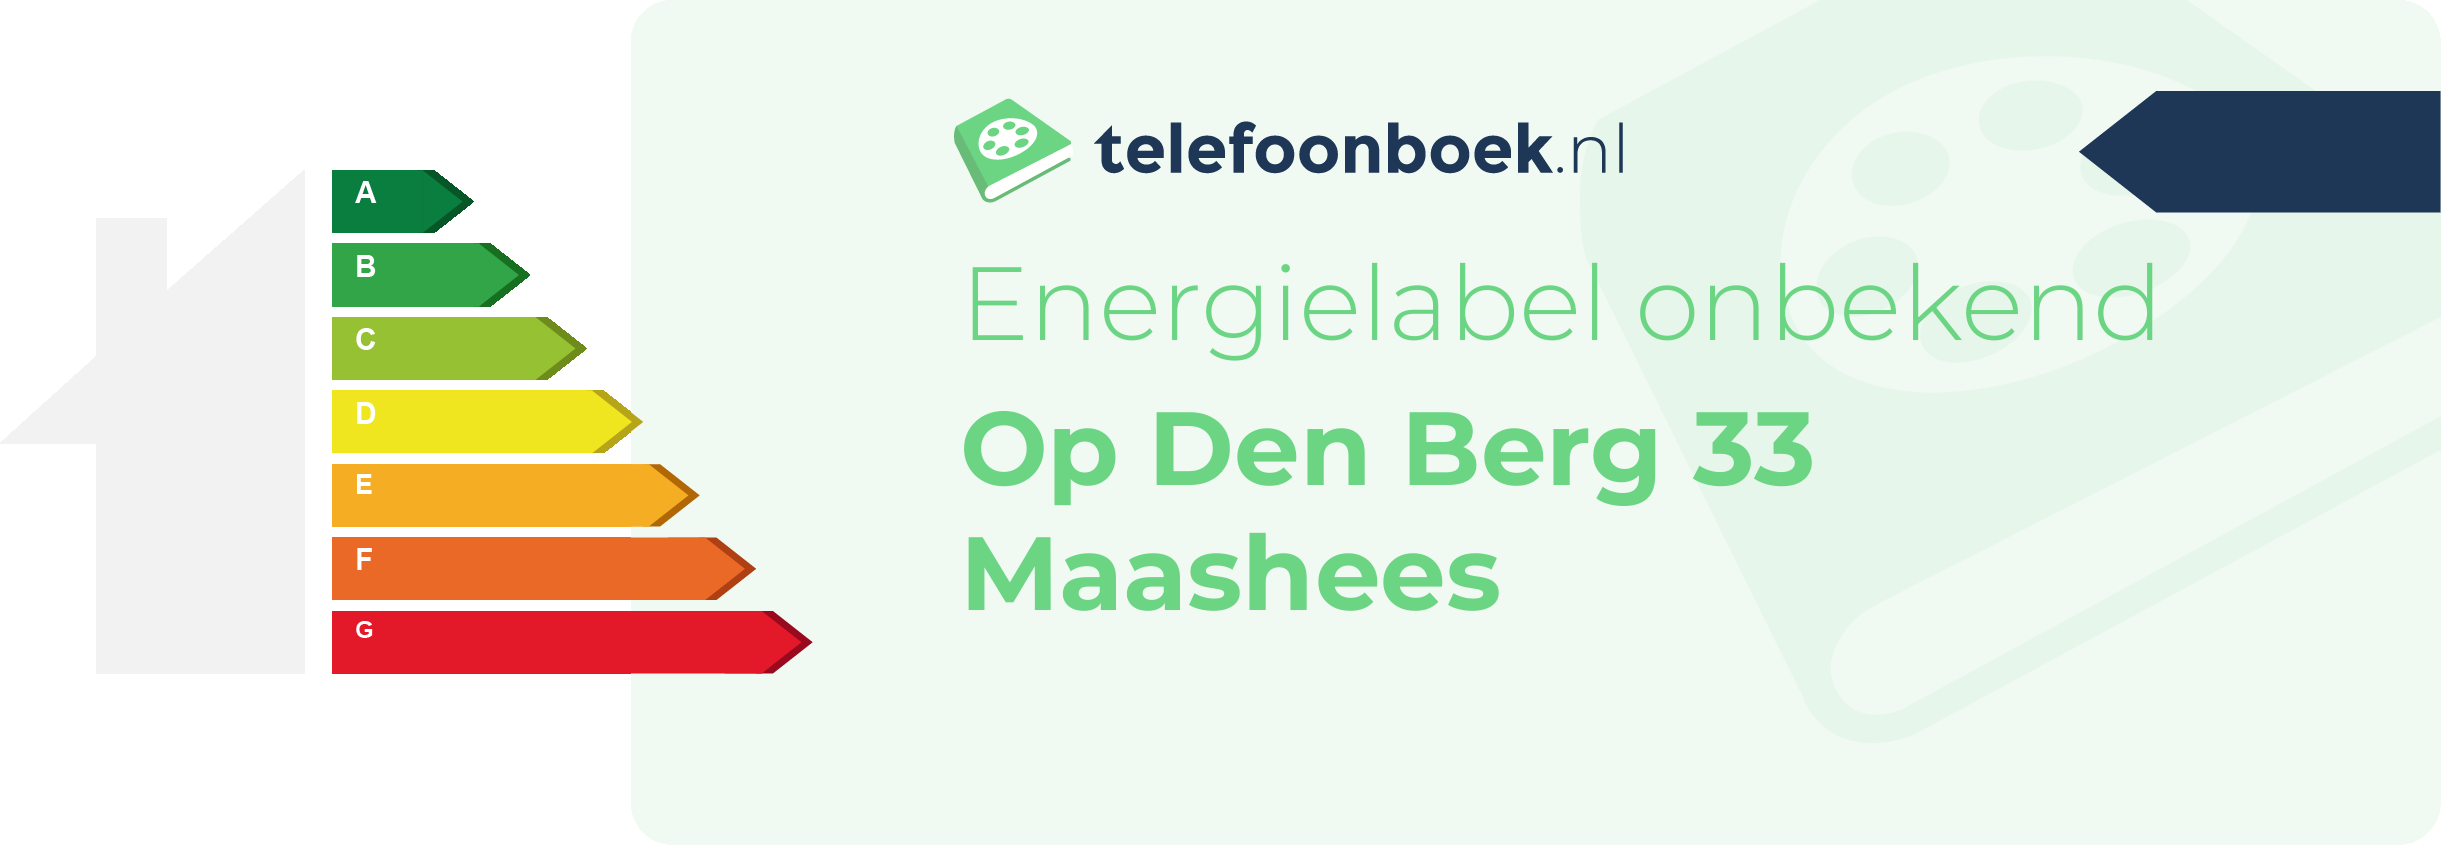 Energielabel Op Den Berg 33 Maashees